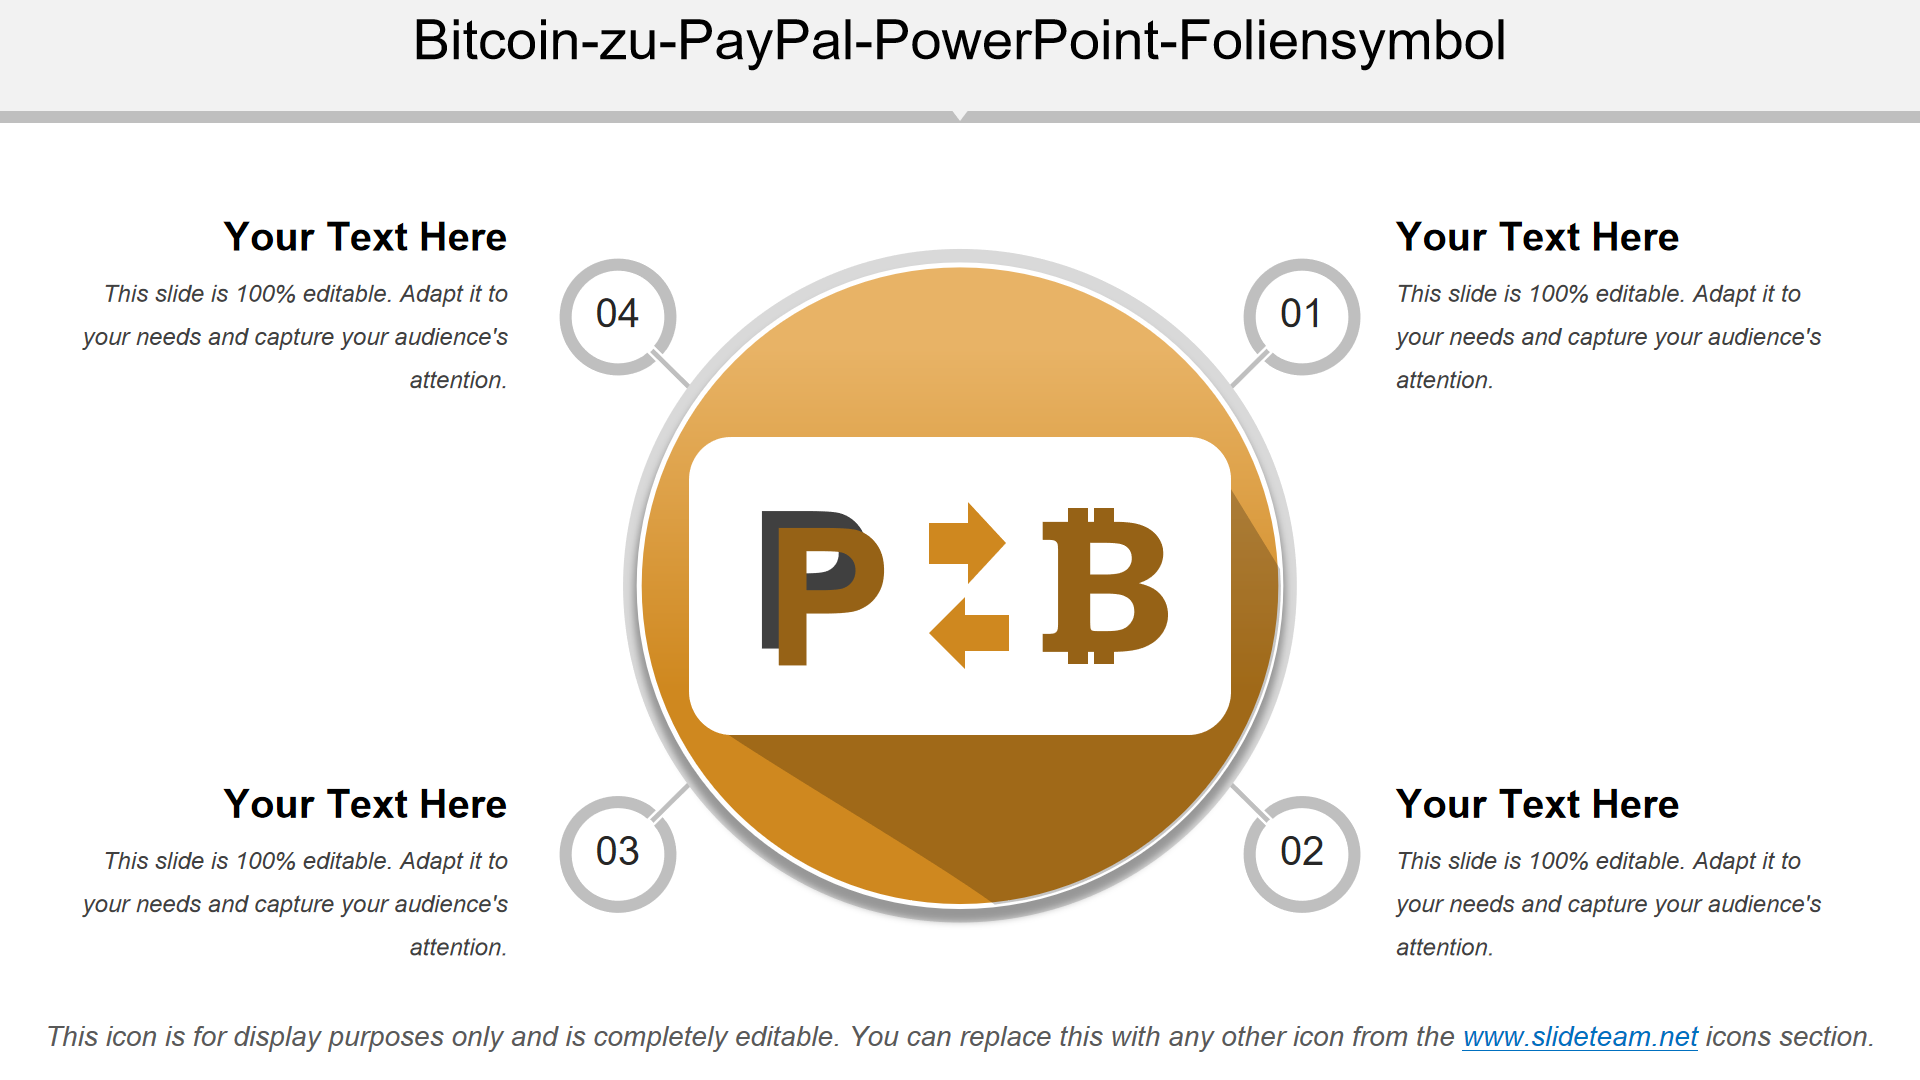 Bitcoin-zu-PayPal-PowerPoint-Foliensymbol